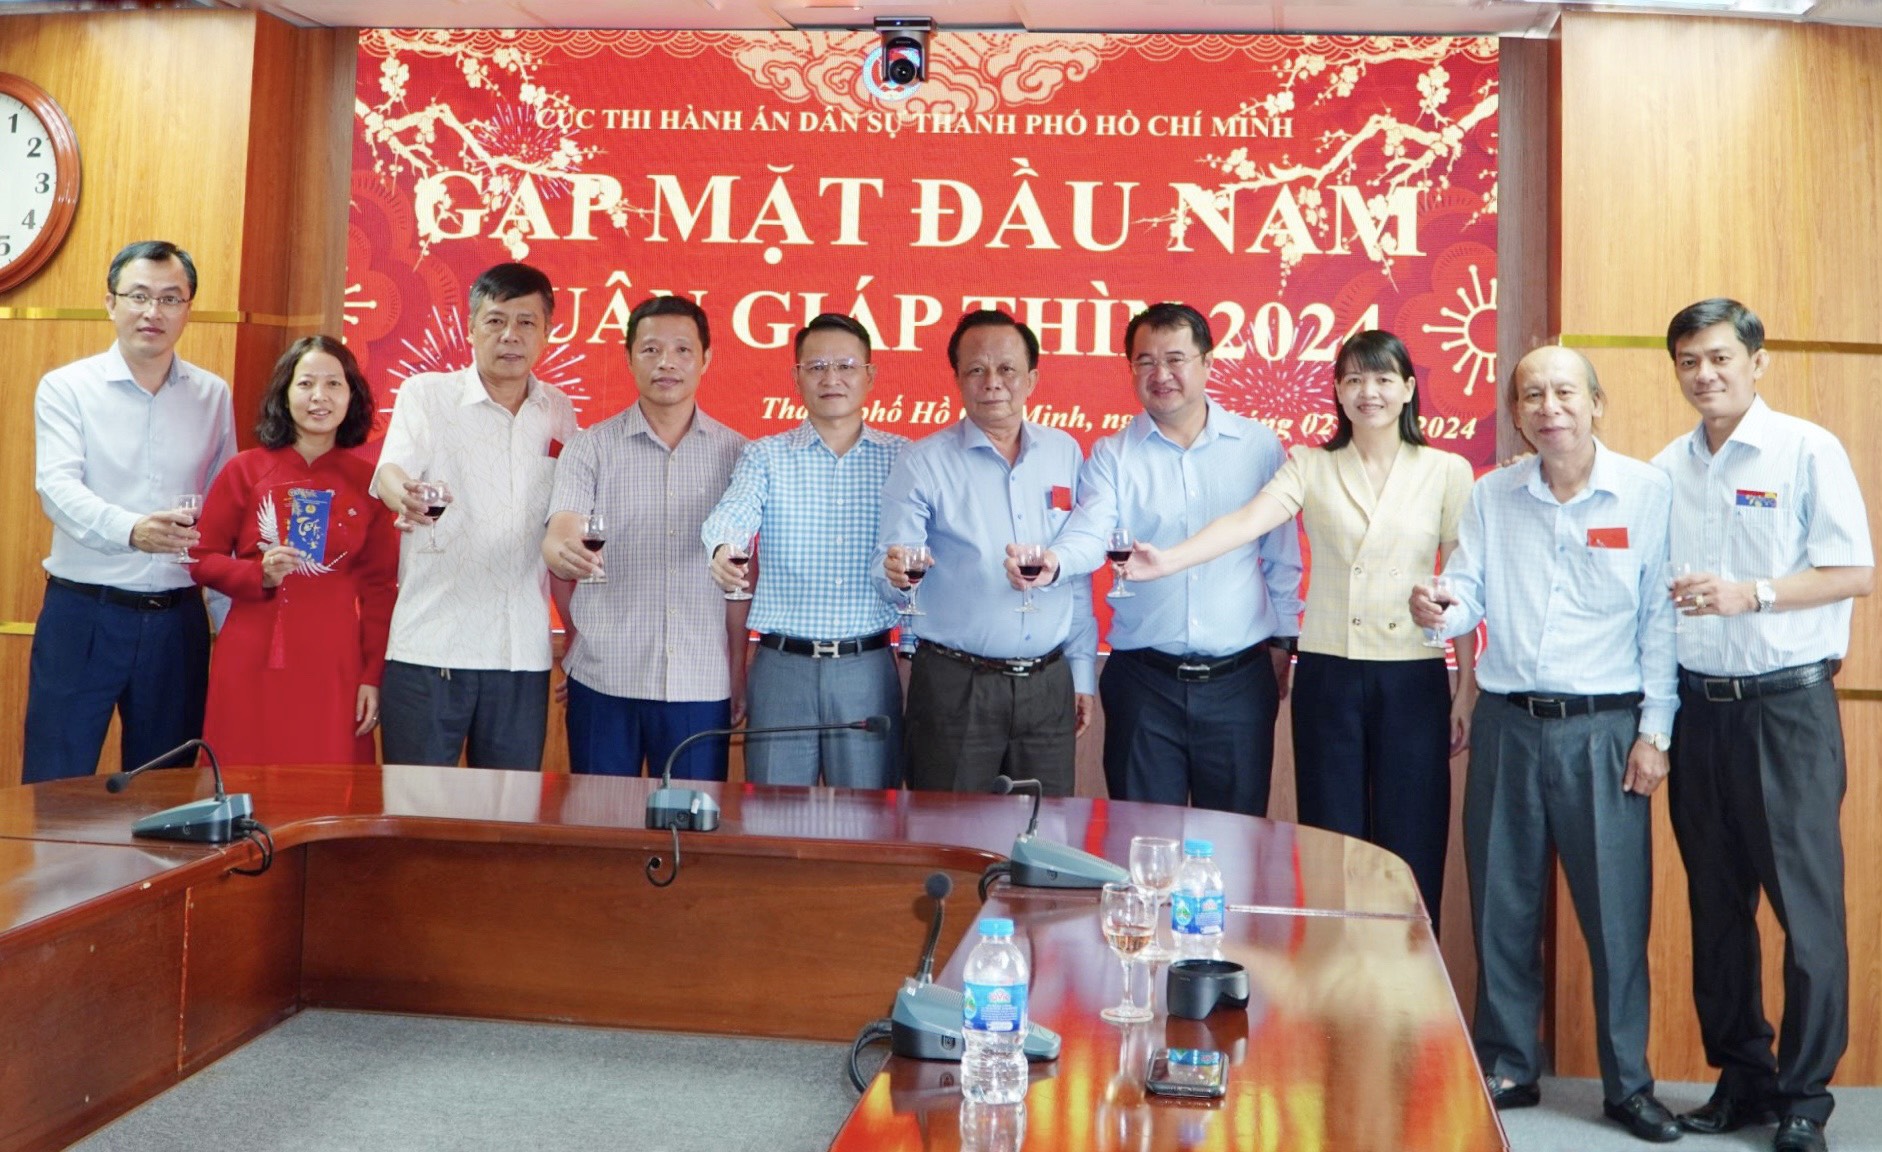 Cục THADS thành phố Hồ Chí Minh tổ chức Gặp mặt đầu năm, Xuân Nhâm Thìn 2024